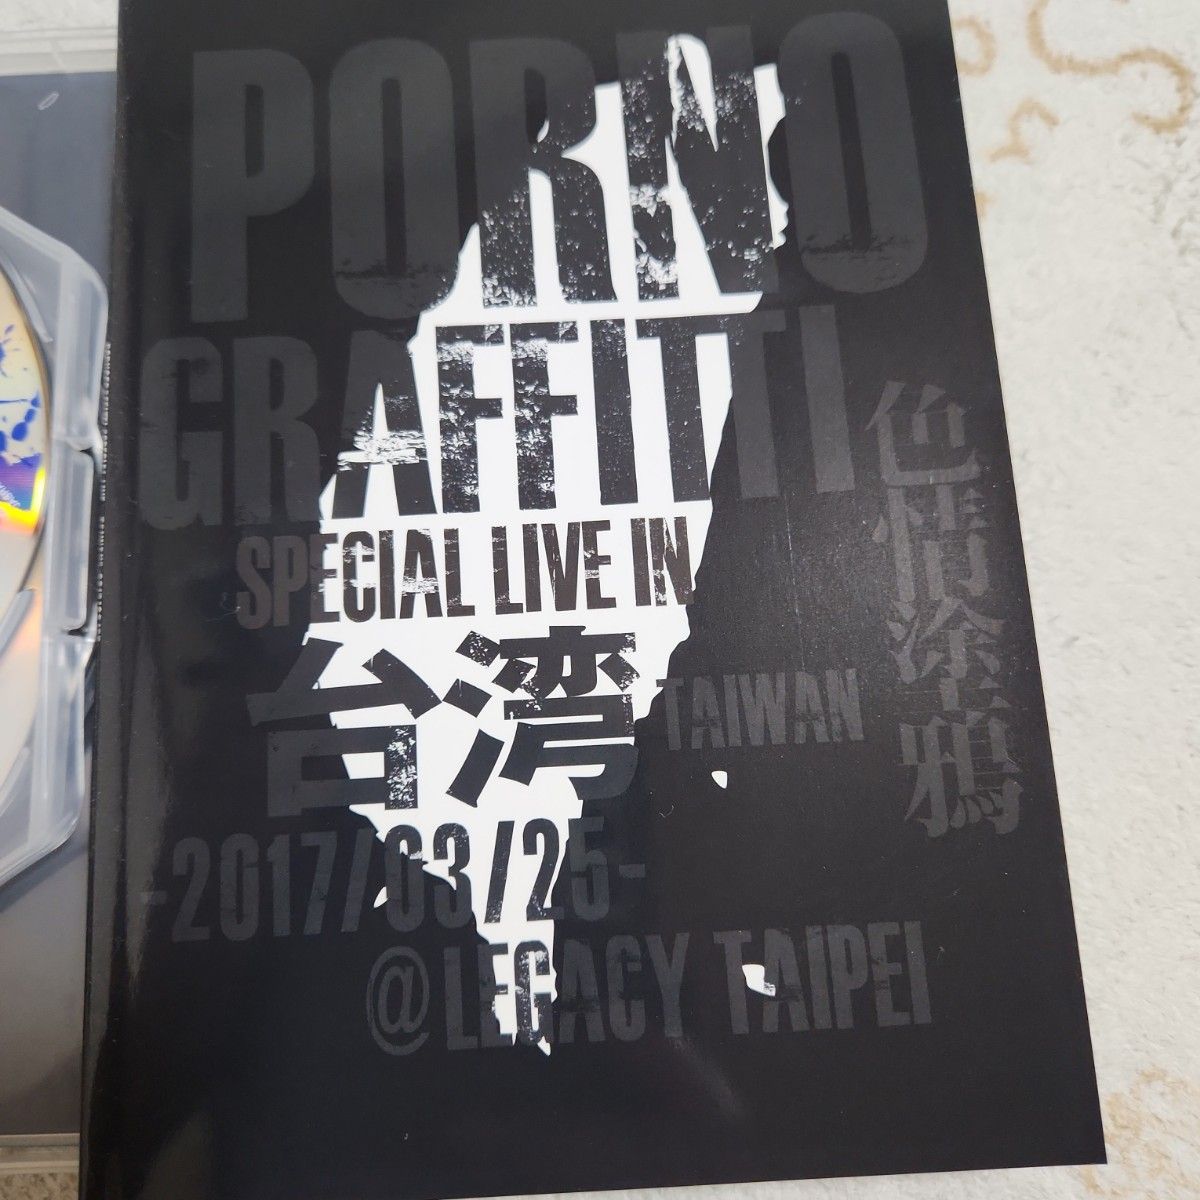 初回生産限定盤 ポルノグラフィティ 2DVD/ Special Live in Taiwan 17/12/20発売 